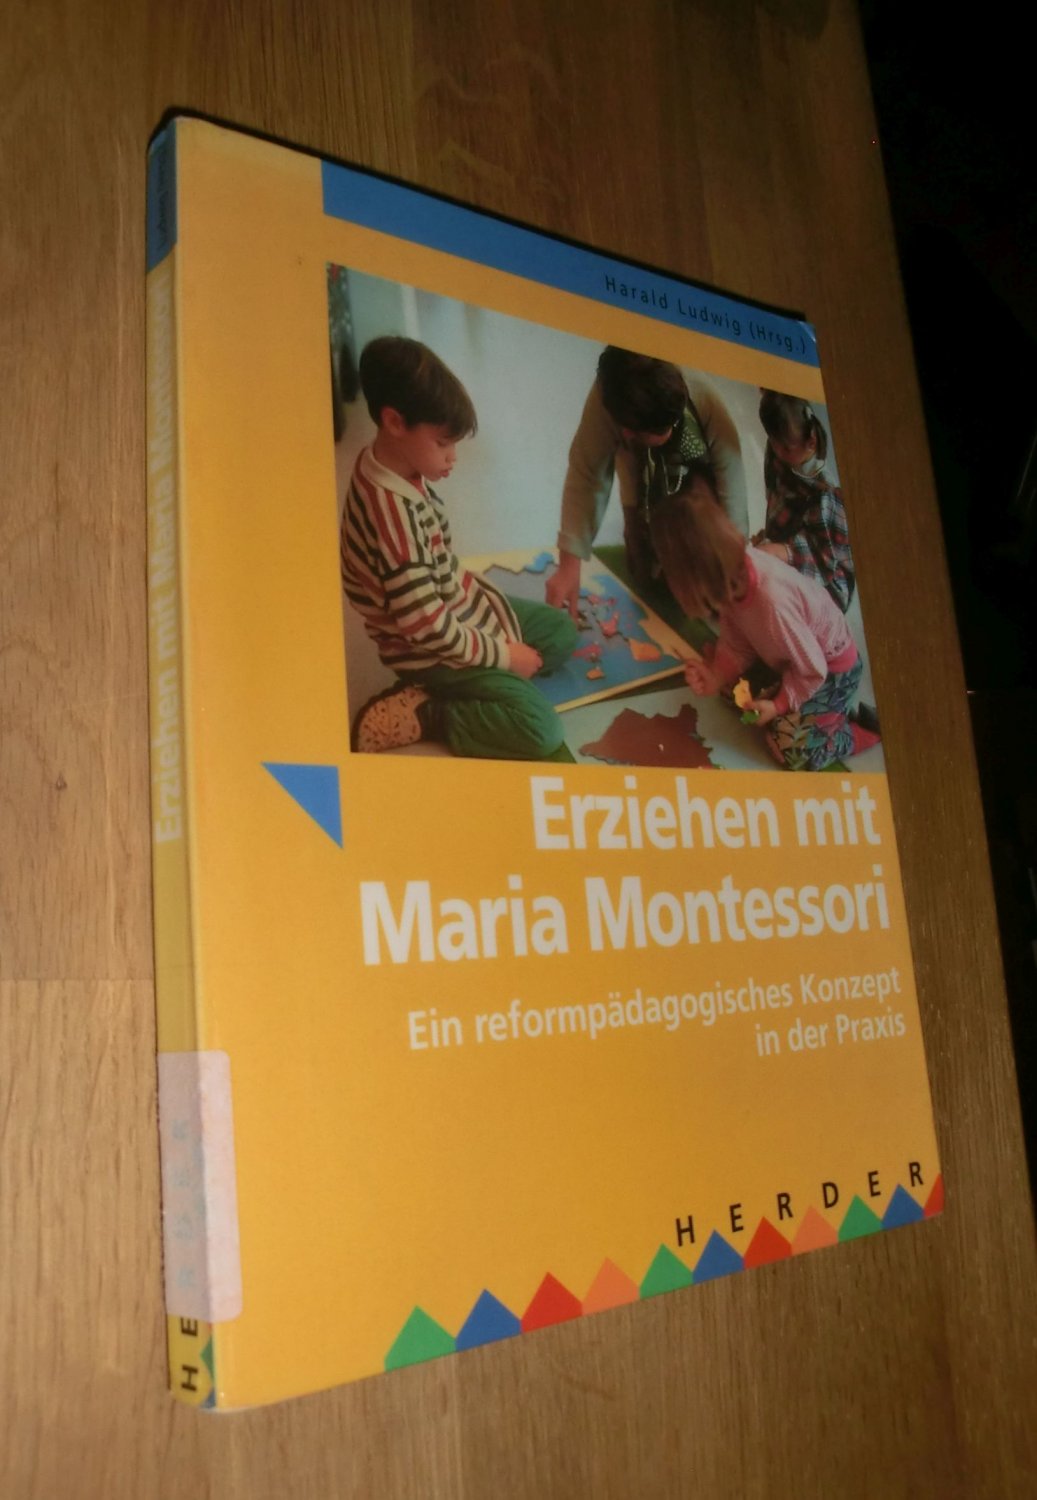 Erziehen mit Maria Montessori : ein reformpädagogisches Konzept in der Praxis - Ludwig, Harald [Hrsg.]